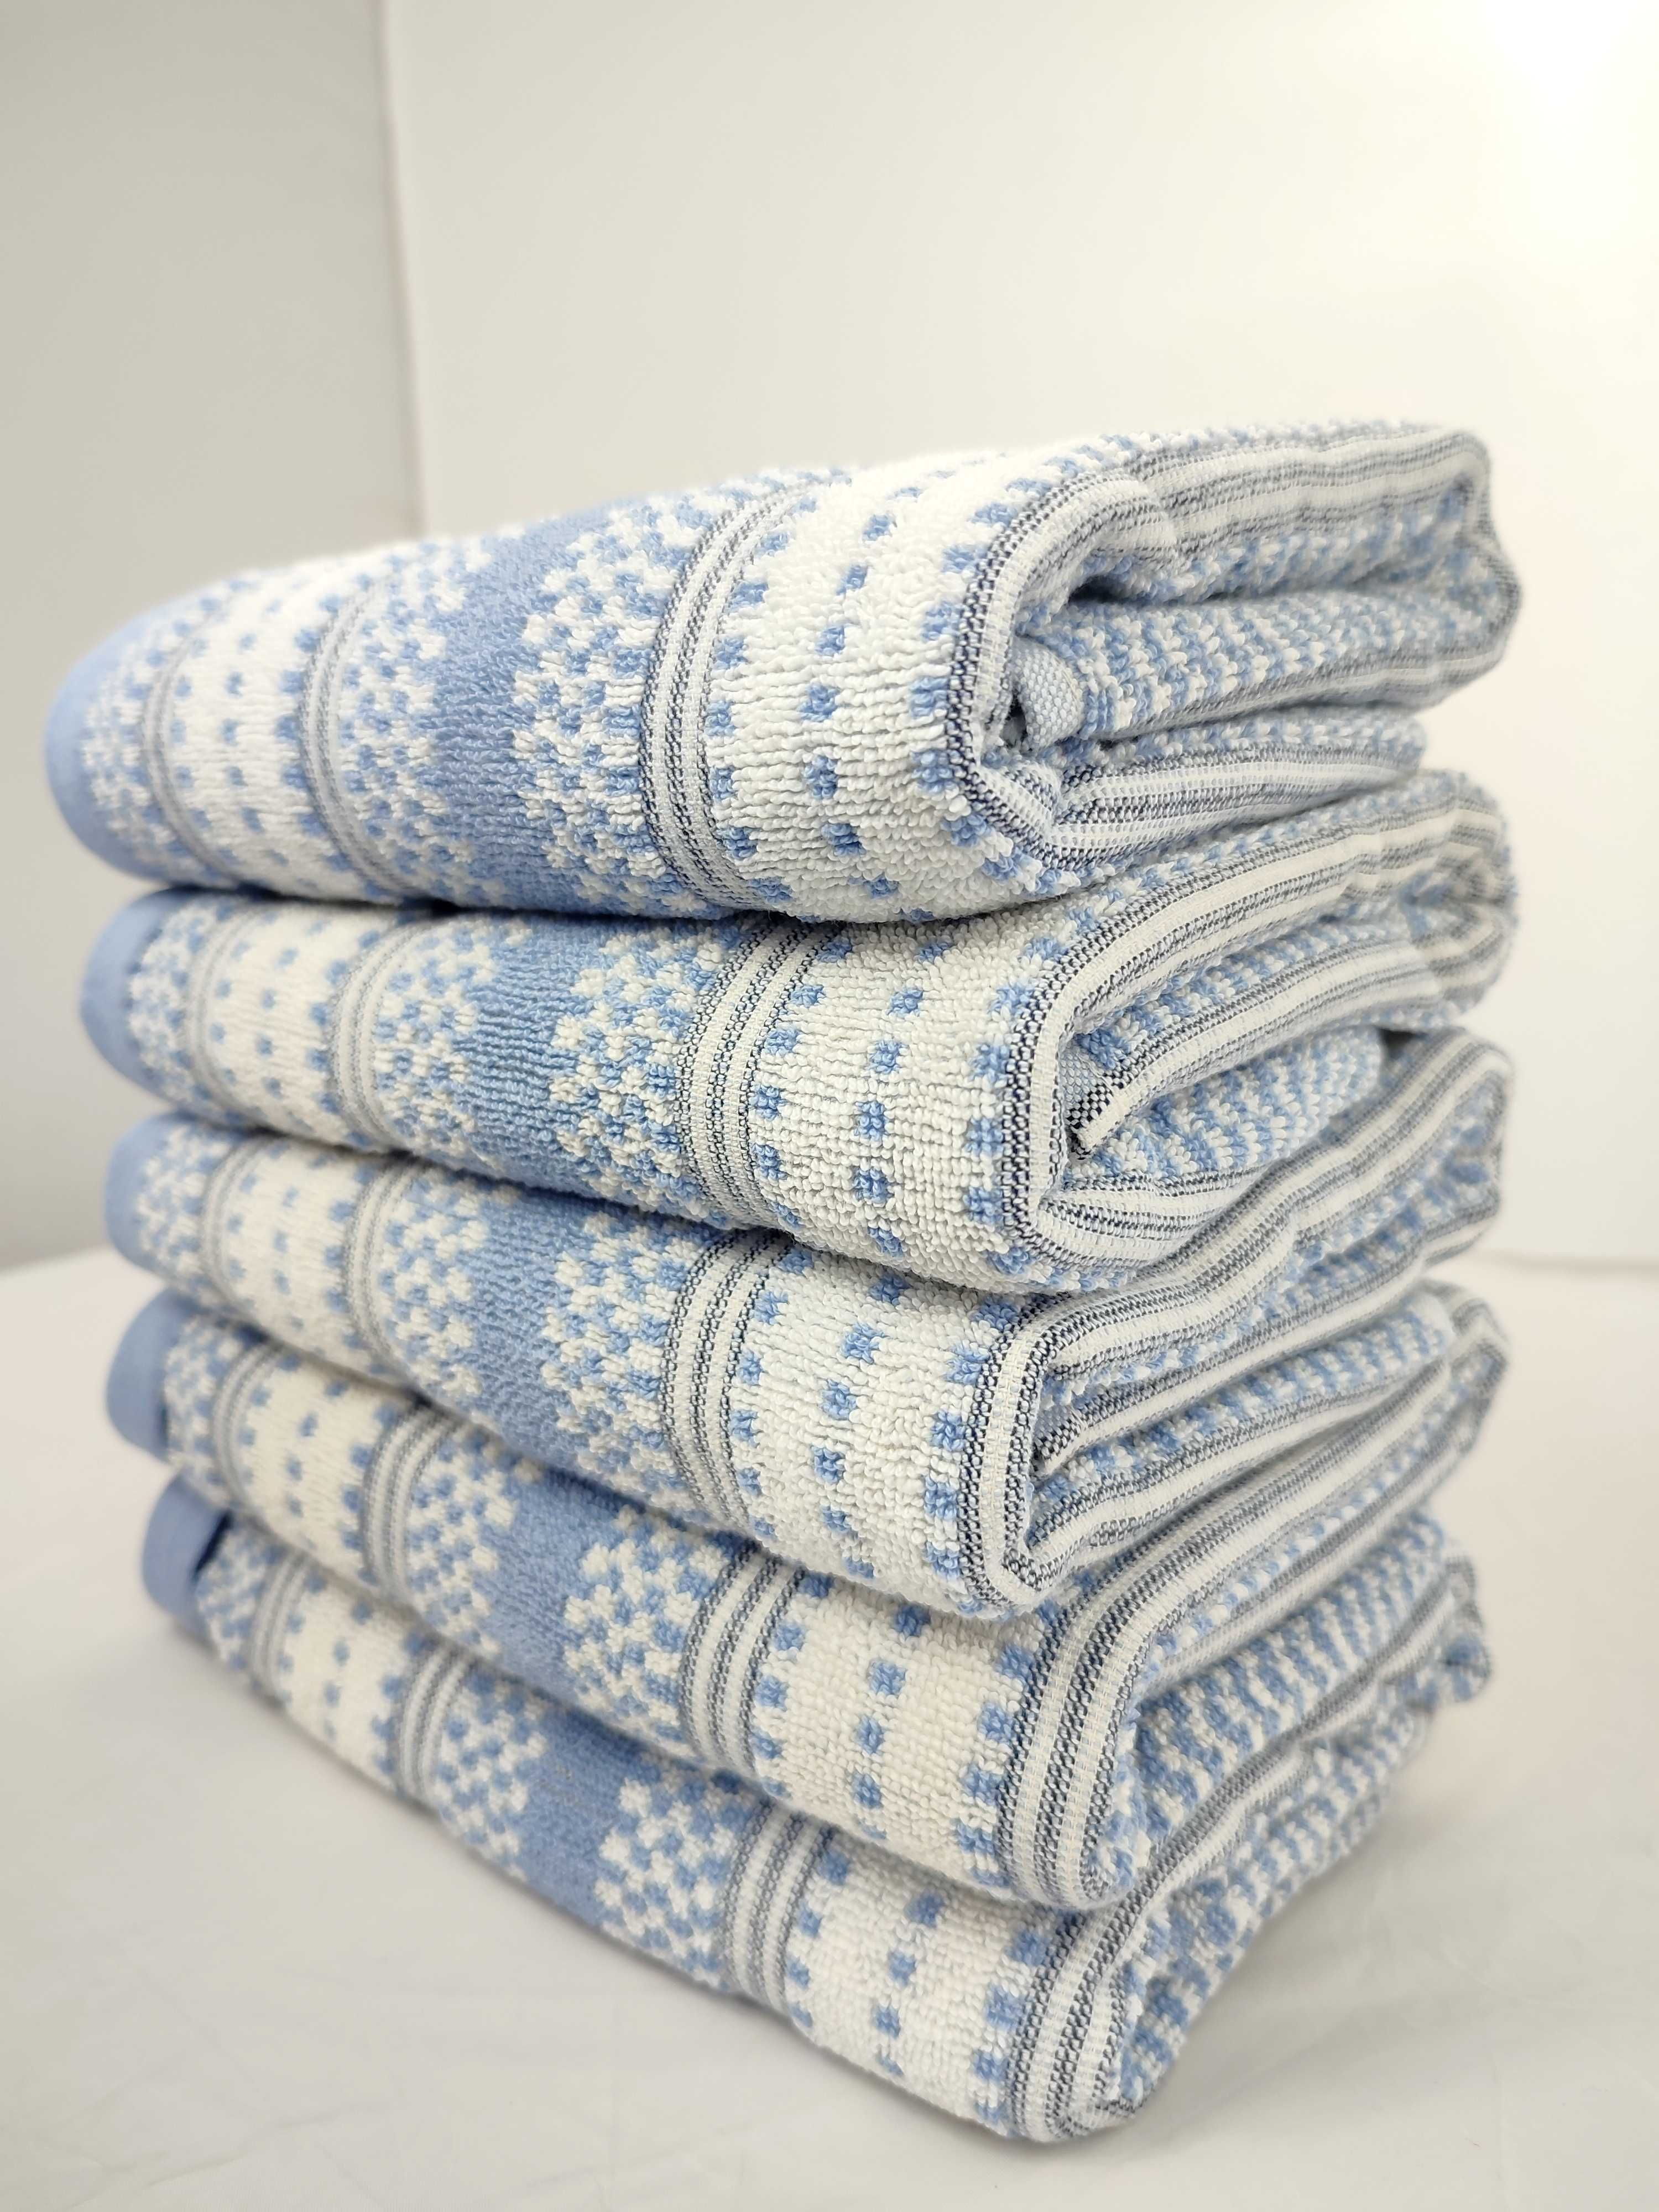 Ręcznik Möve mały do rąk Hotelowy 50x100 Outlet bawełna niebieski wzór